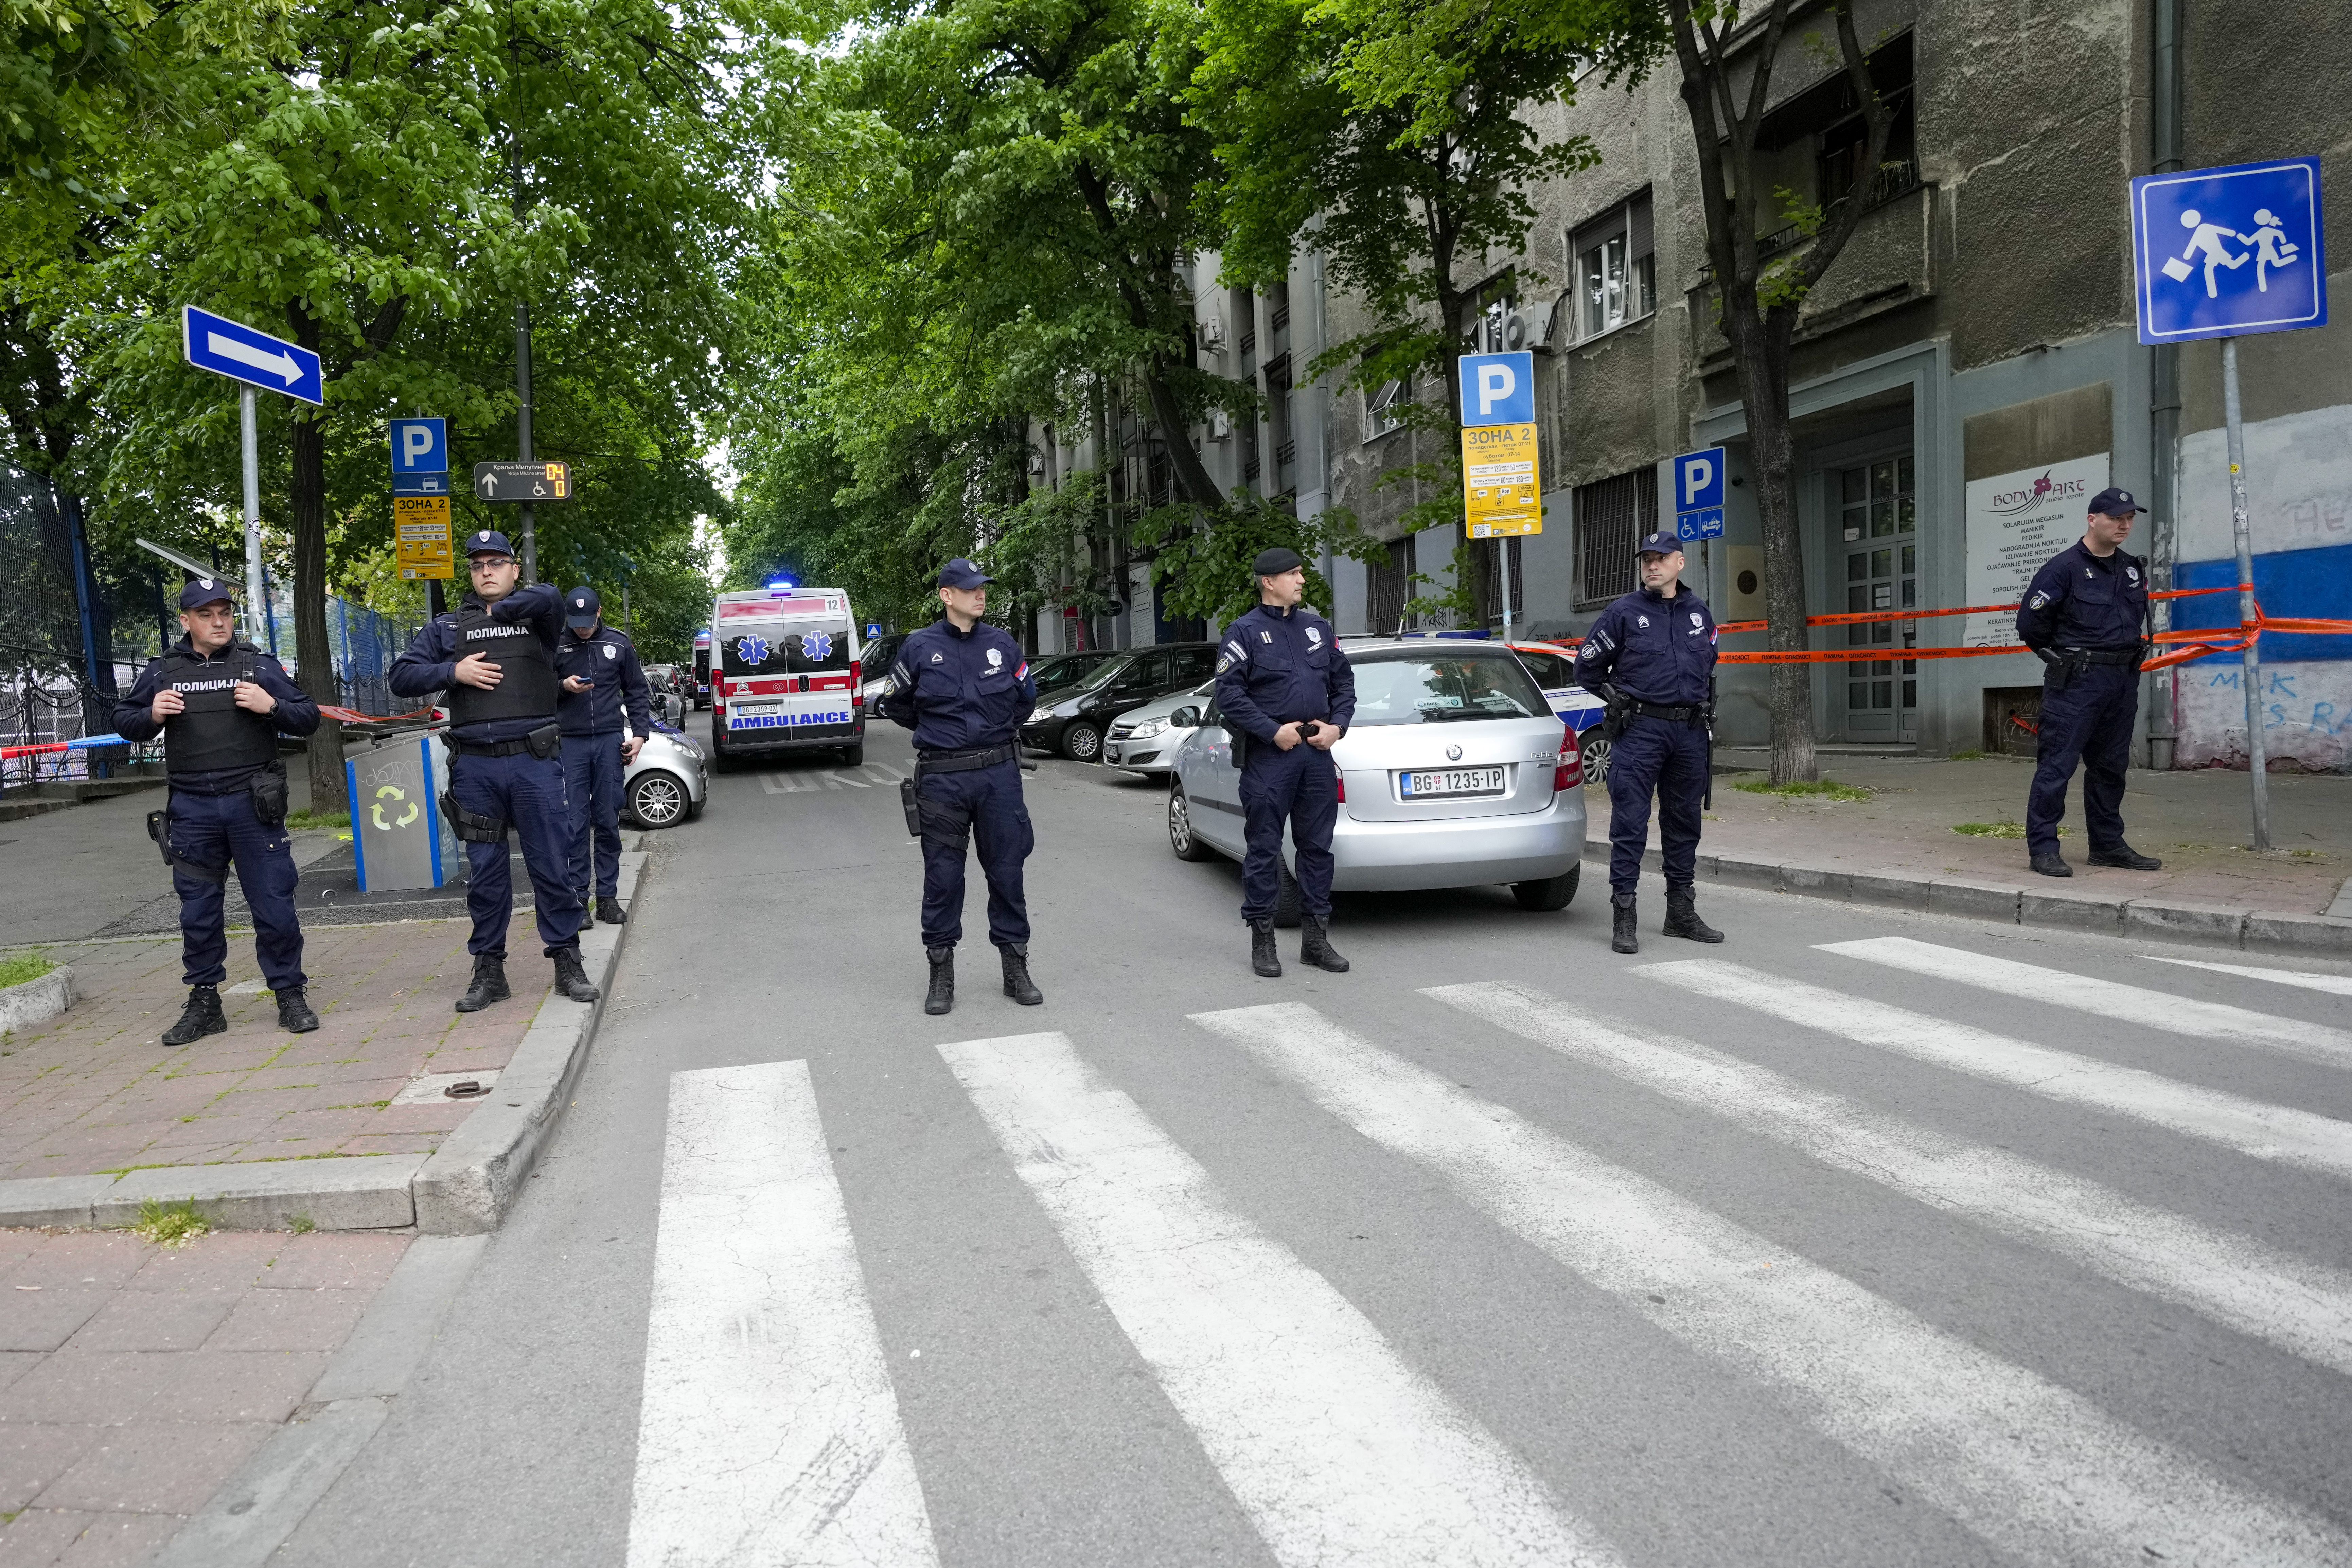 Agentes con cascos y chalecos antibalas acordonaron los alrededores de la escuela. (AP Photo/Darko Vojinovic)